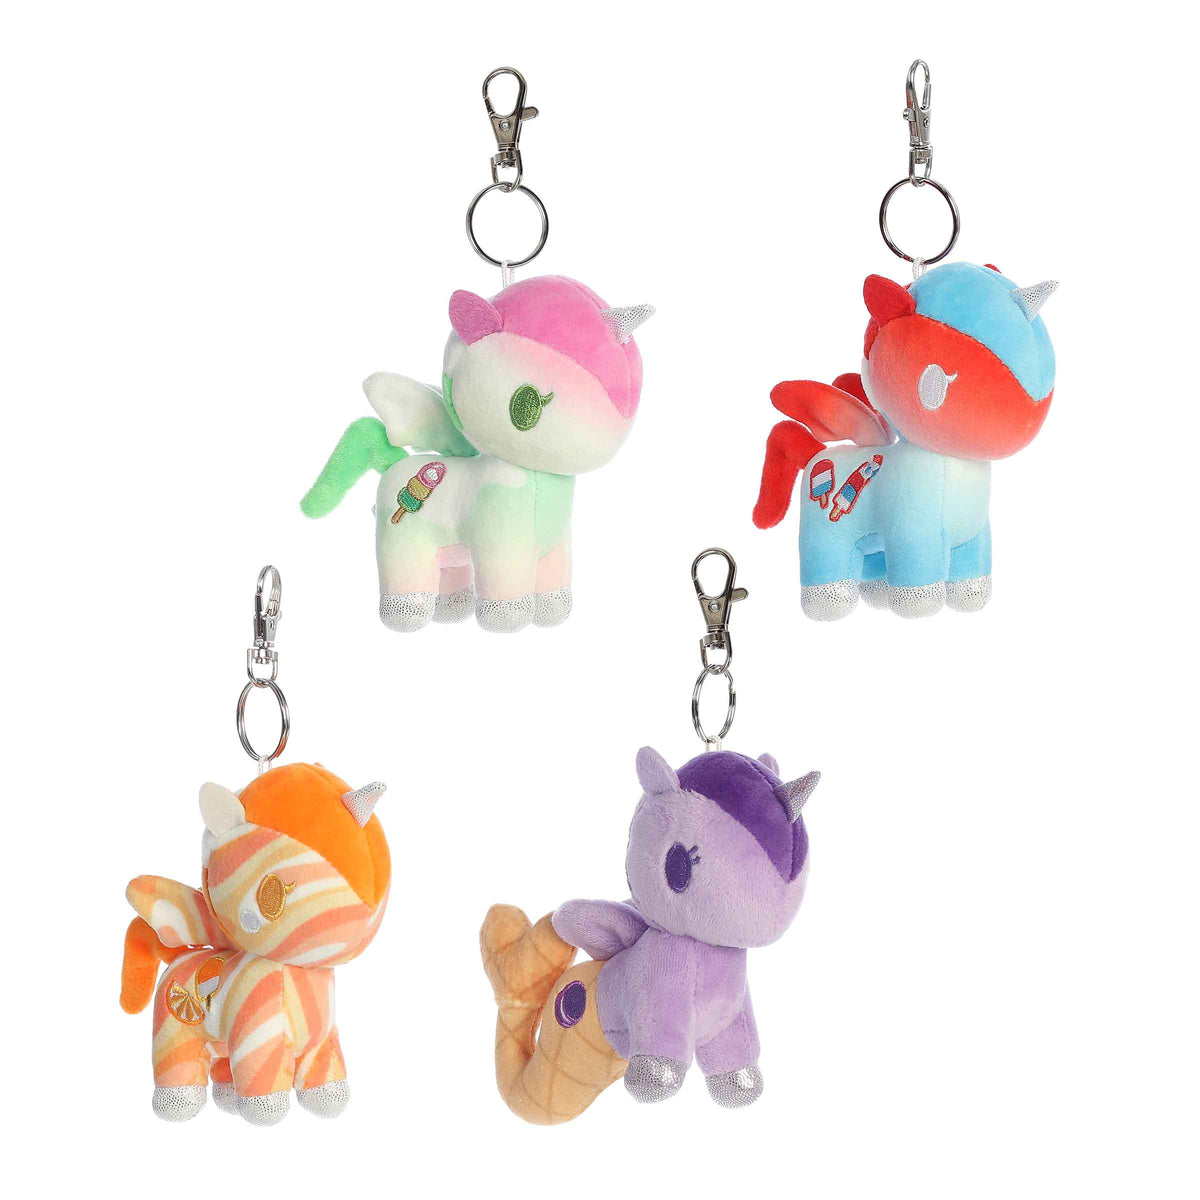 tokidoki Frozen Treats plush keychains, unicornos & mermicornos, colorful summer fun, magical pony plushies